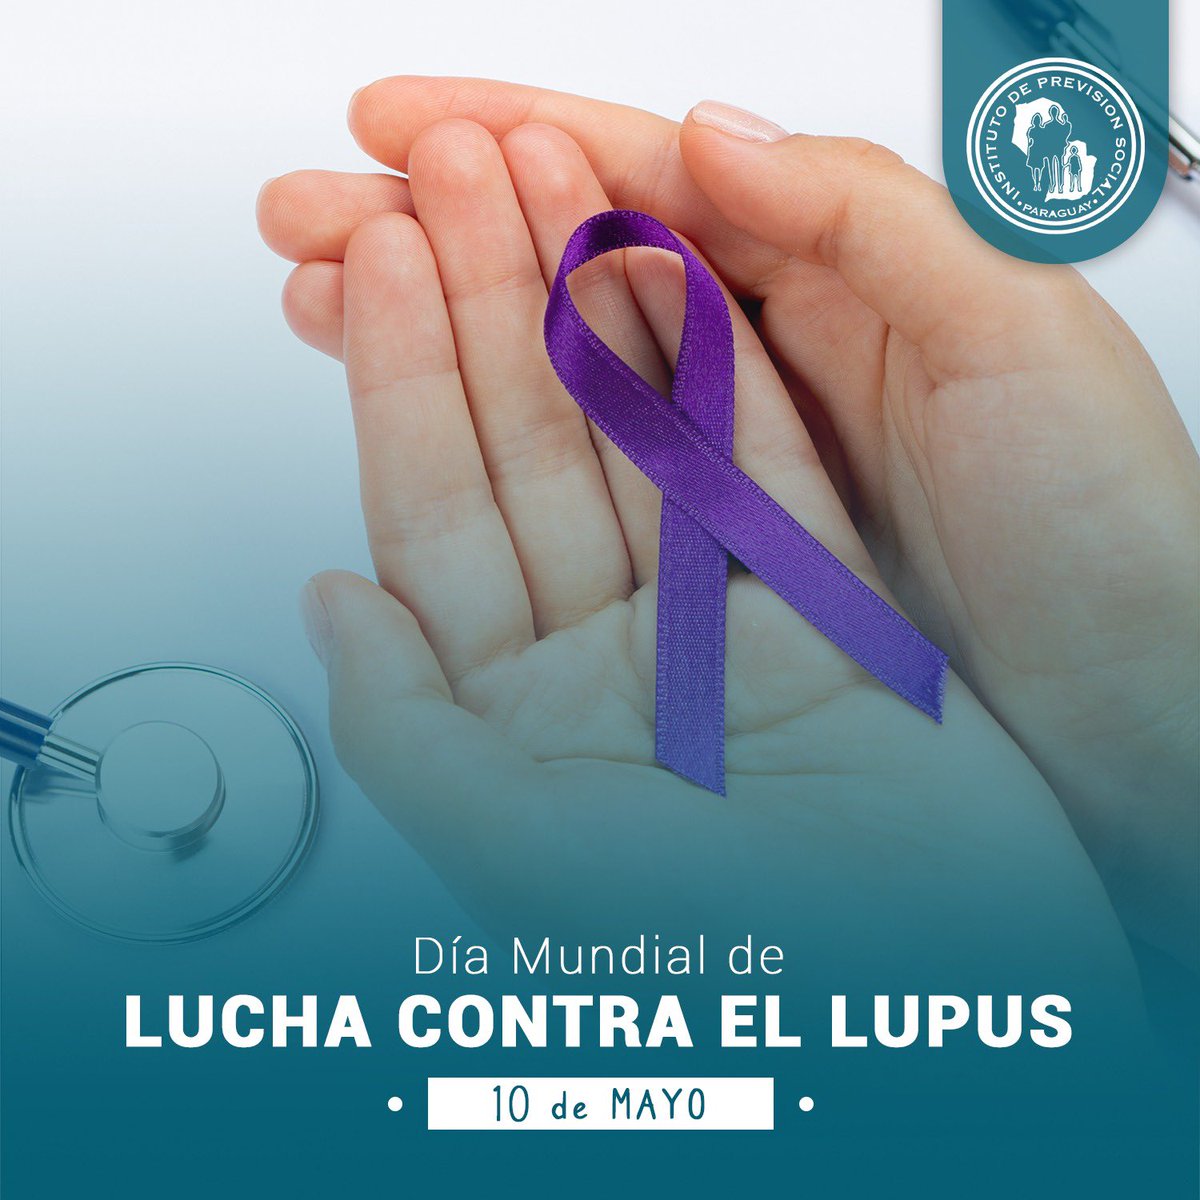 🏥 Uniendo fuerzas contra el lupus con un diagnóstico precoz y acceso a un tratamiento adecuado. ➕ℹ️ goo.su/QT3Uy.